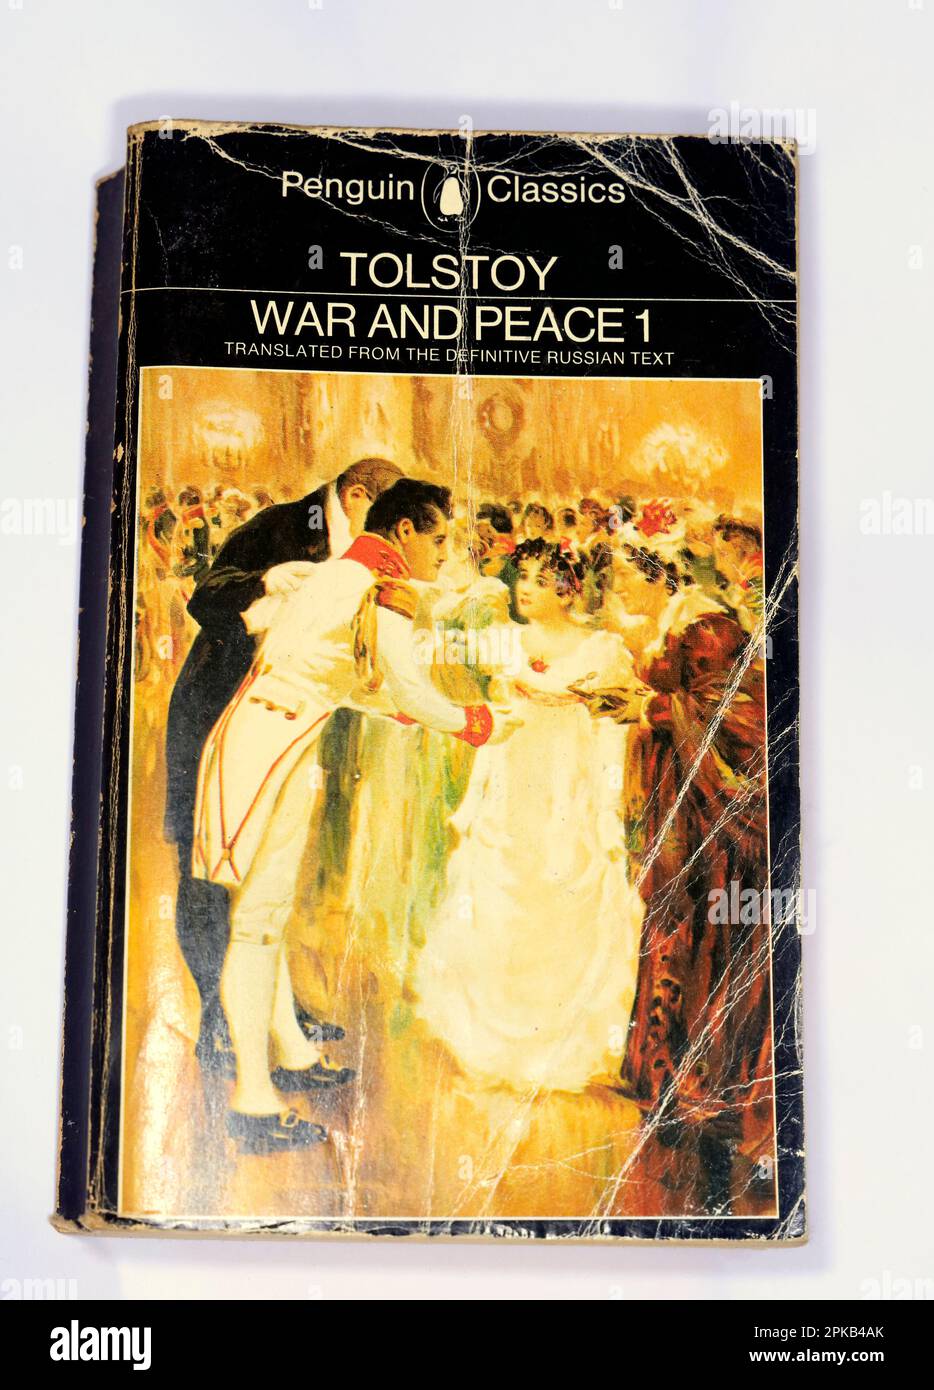 Leo Tolstoy - Guerre et paix - Penguin Classics. Couverture de livre de poche - usée. Banque D'Images